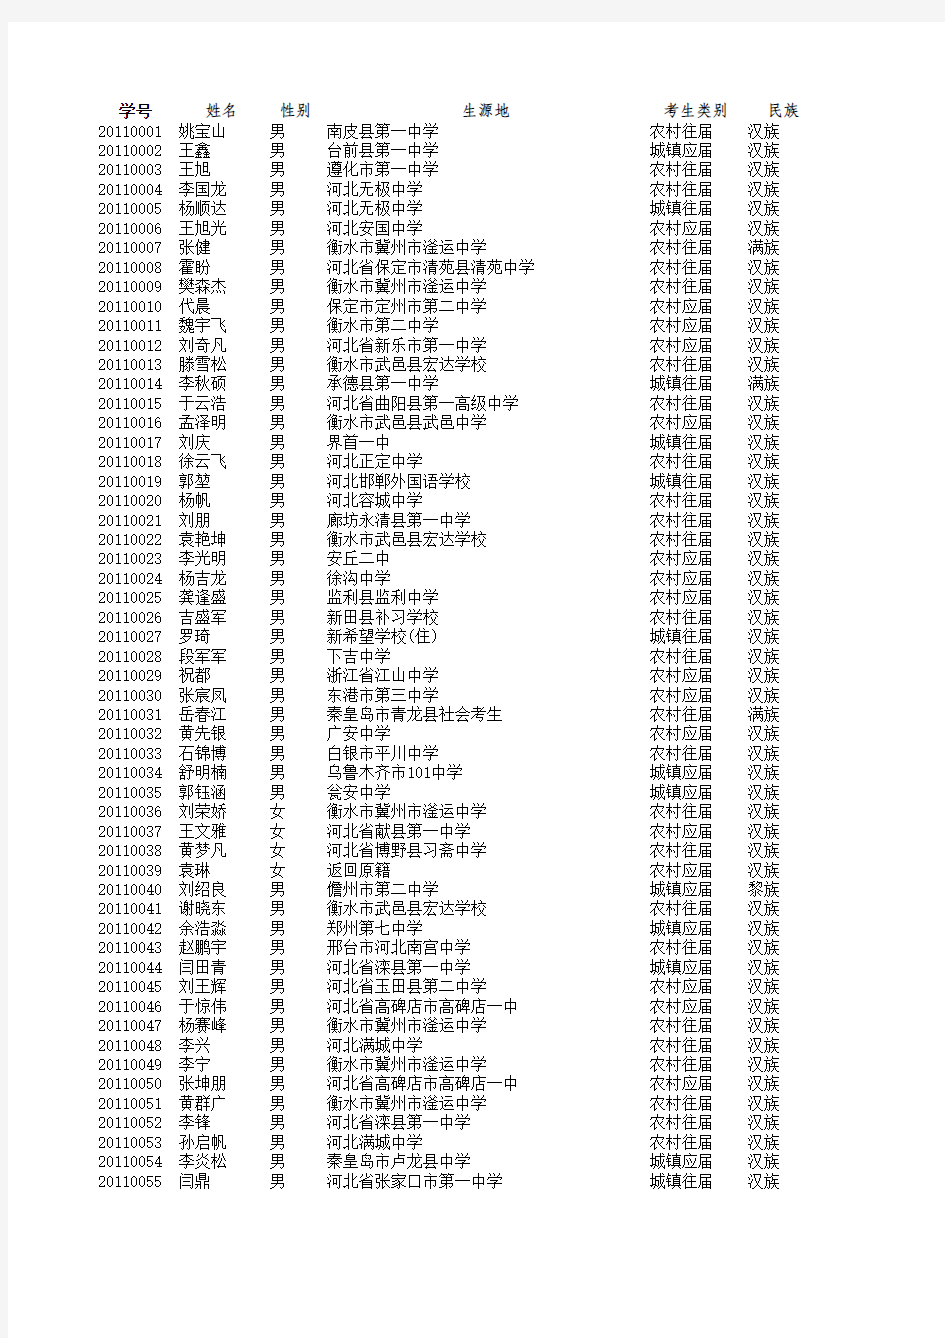 2011本科新生名单 (编班)